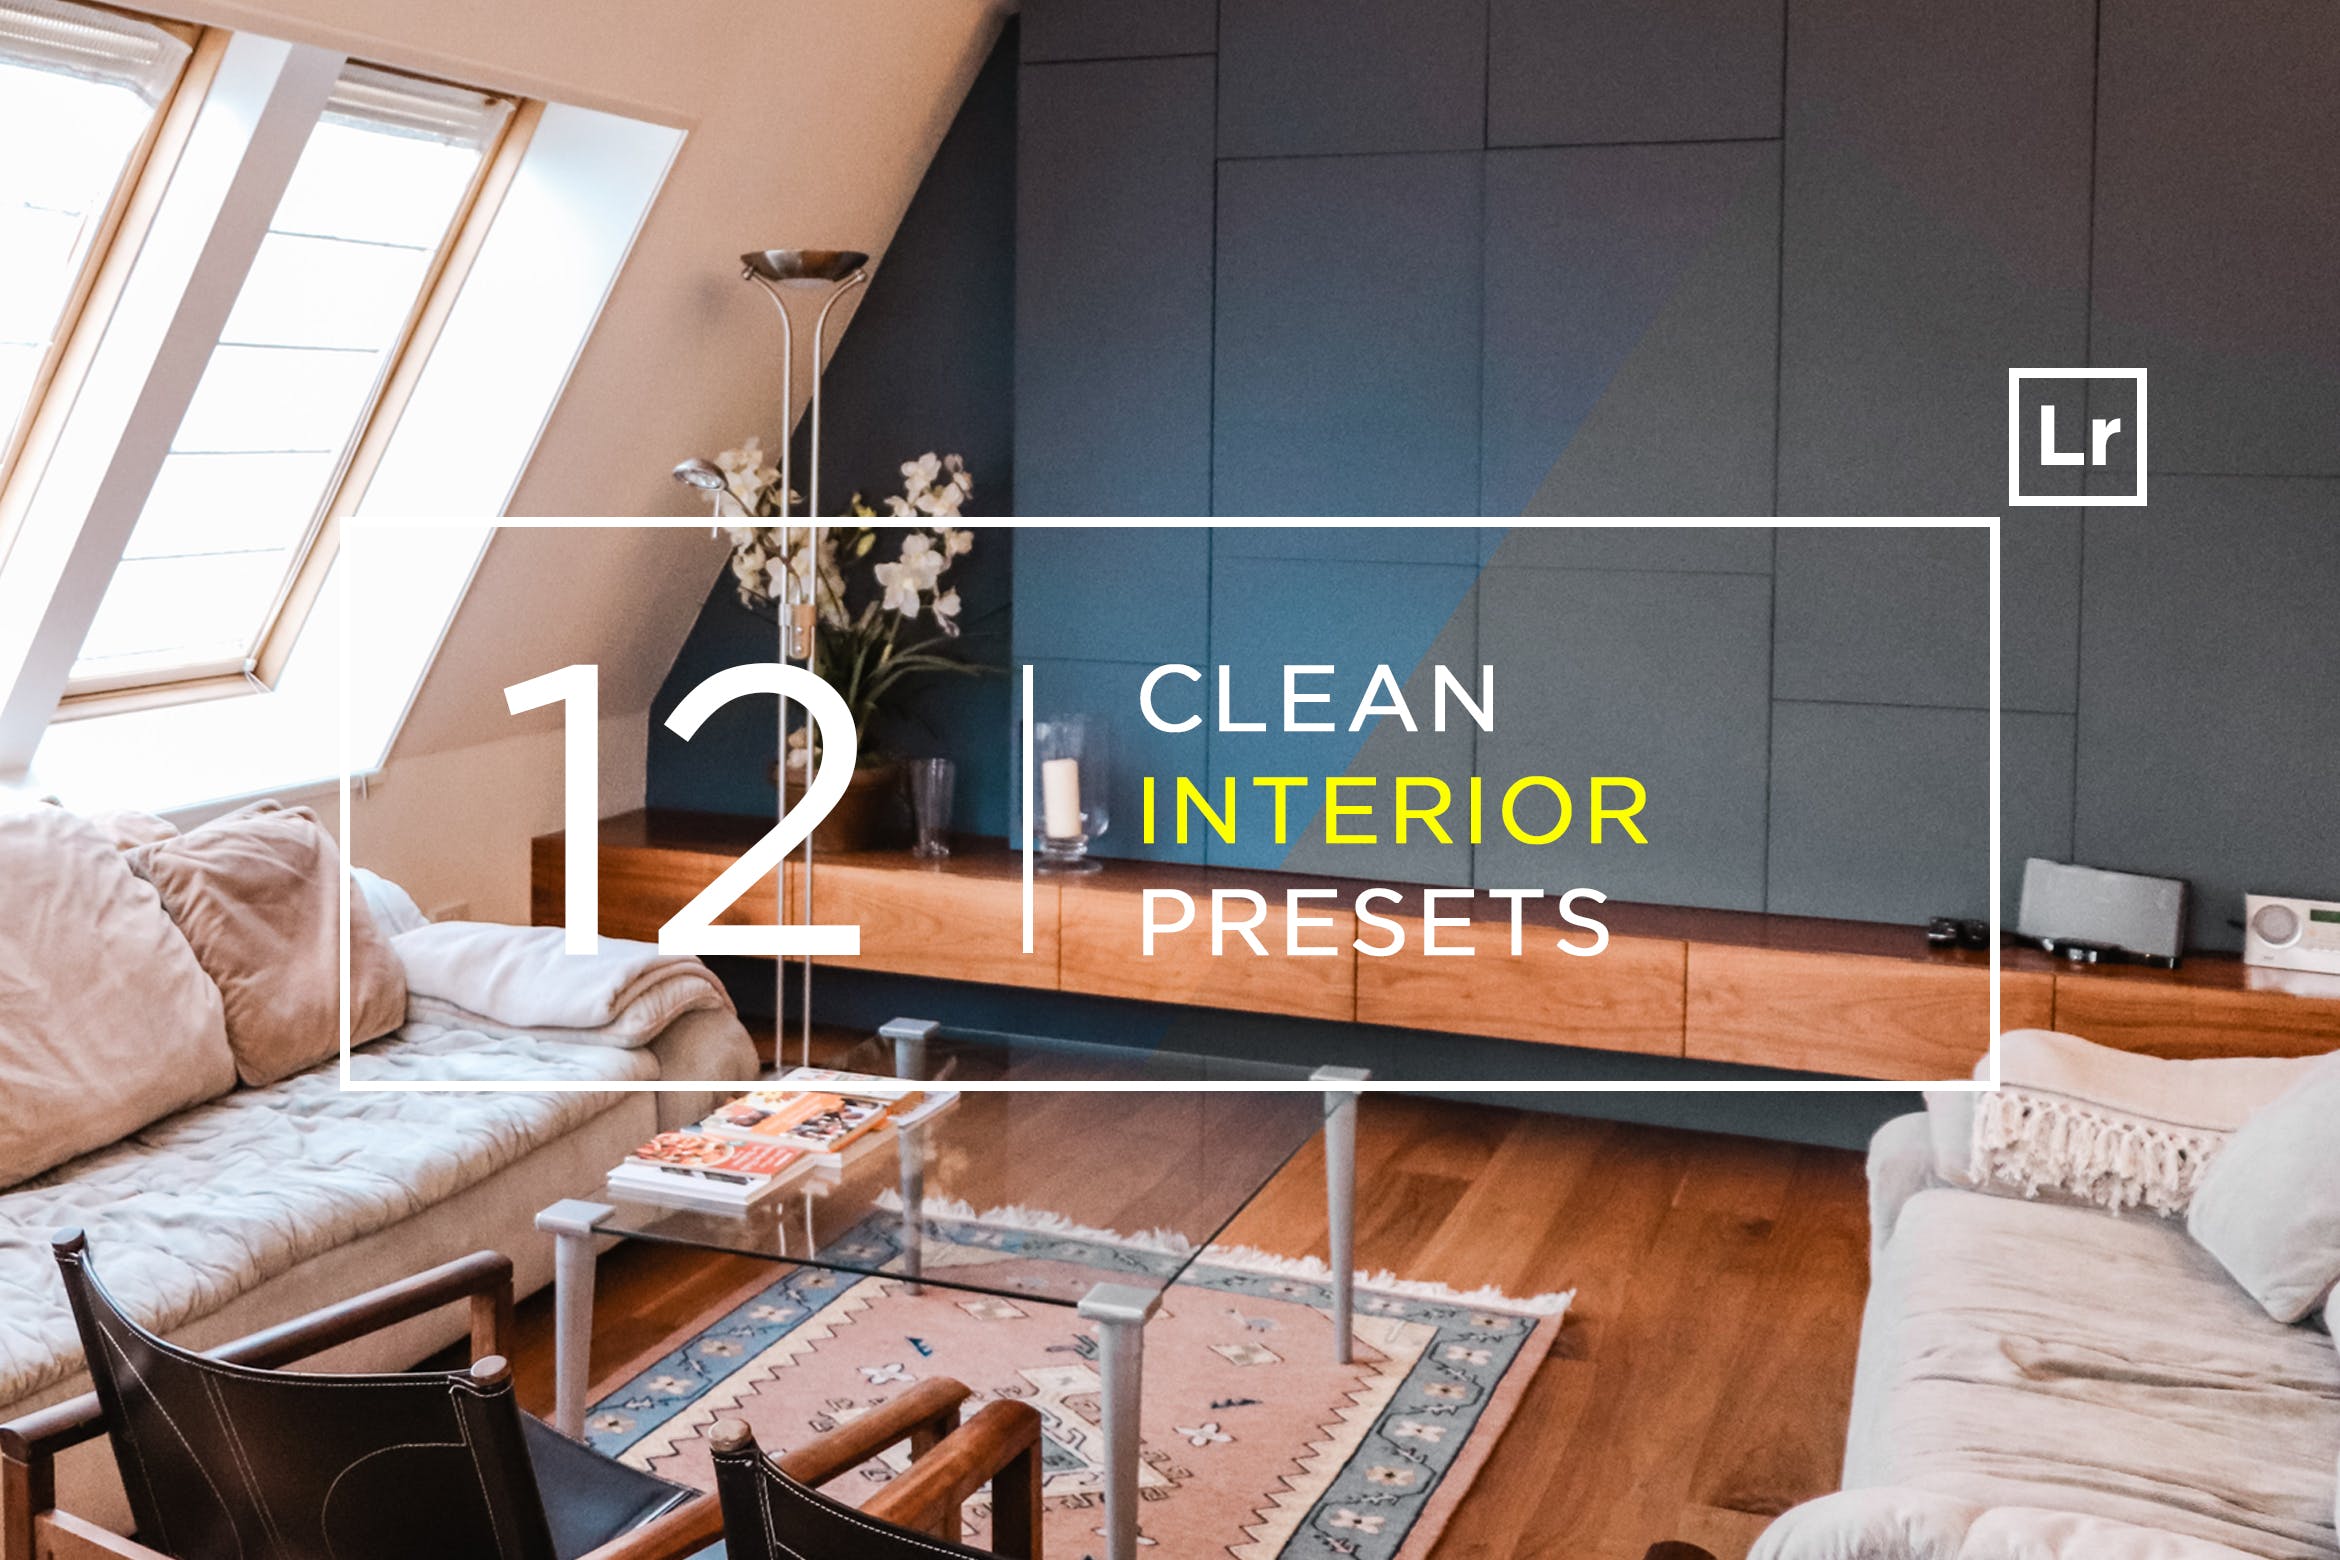 12款室内摄影必备的调色滤镜亿图网易图库精选LR预设 12 Clean Interior Lightroom Presets插图